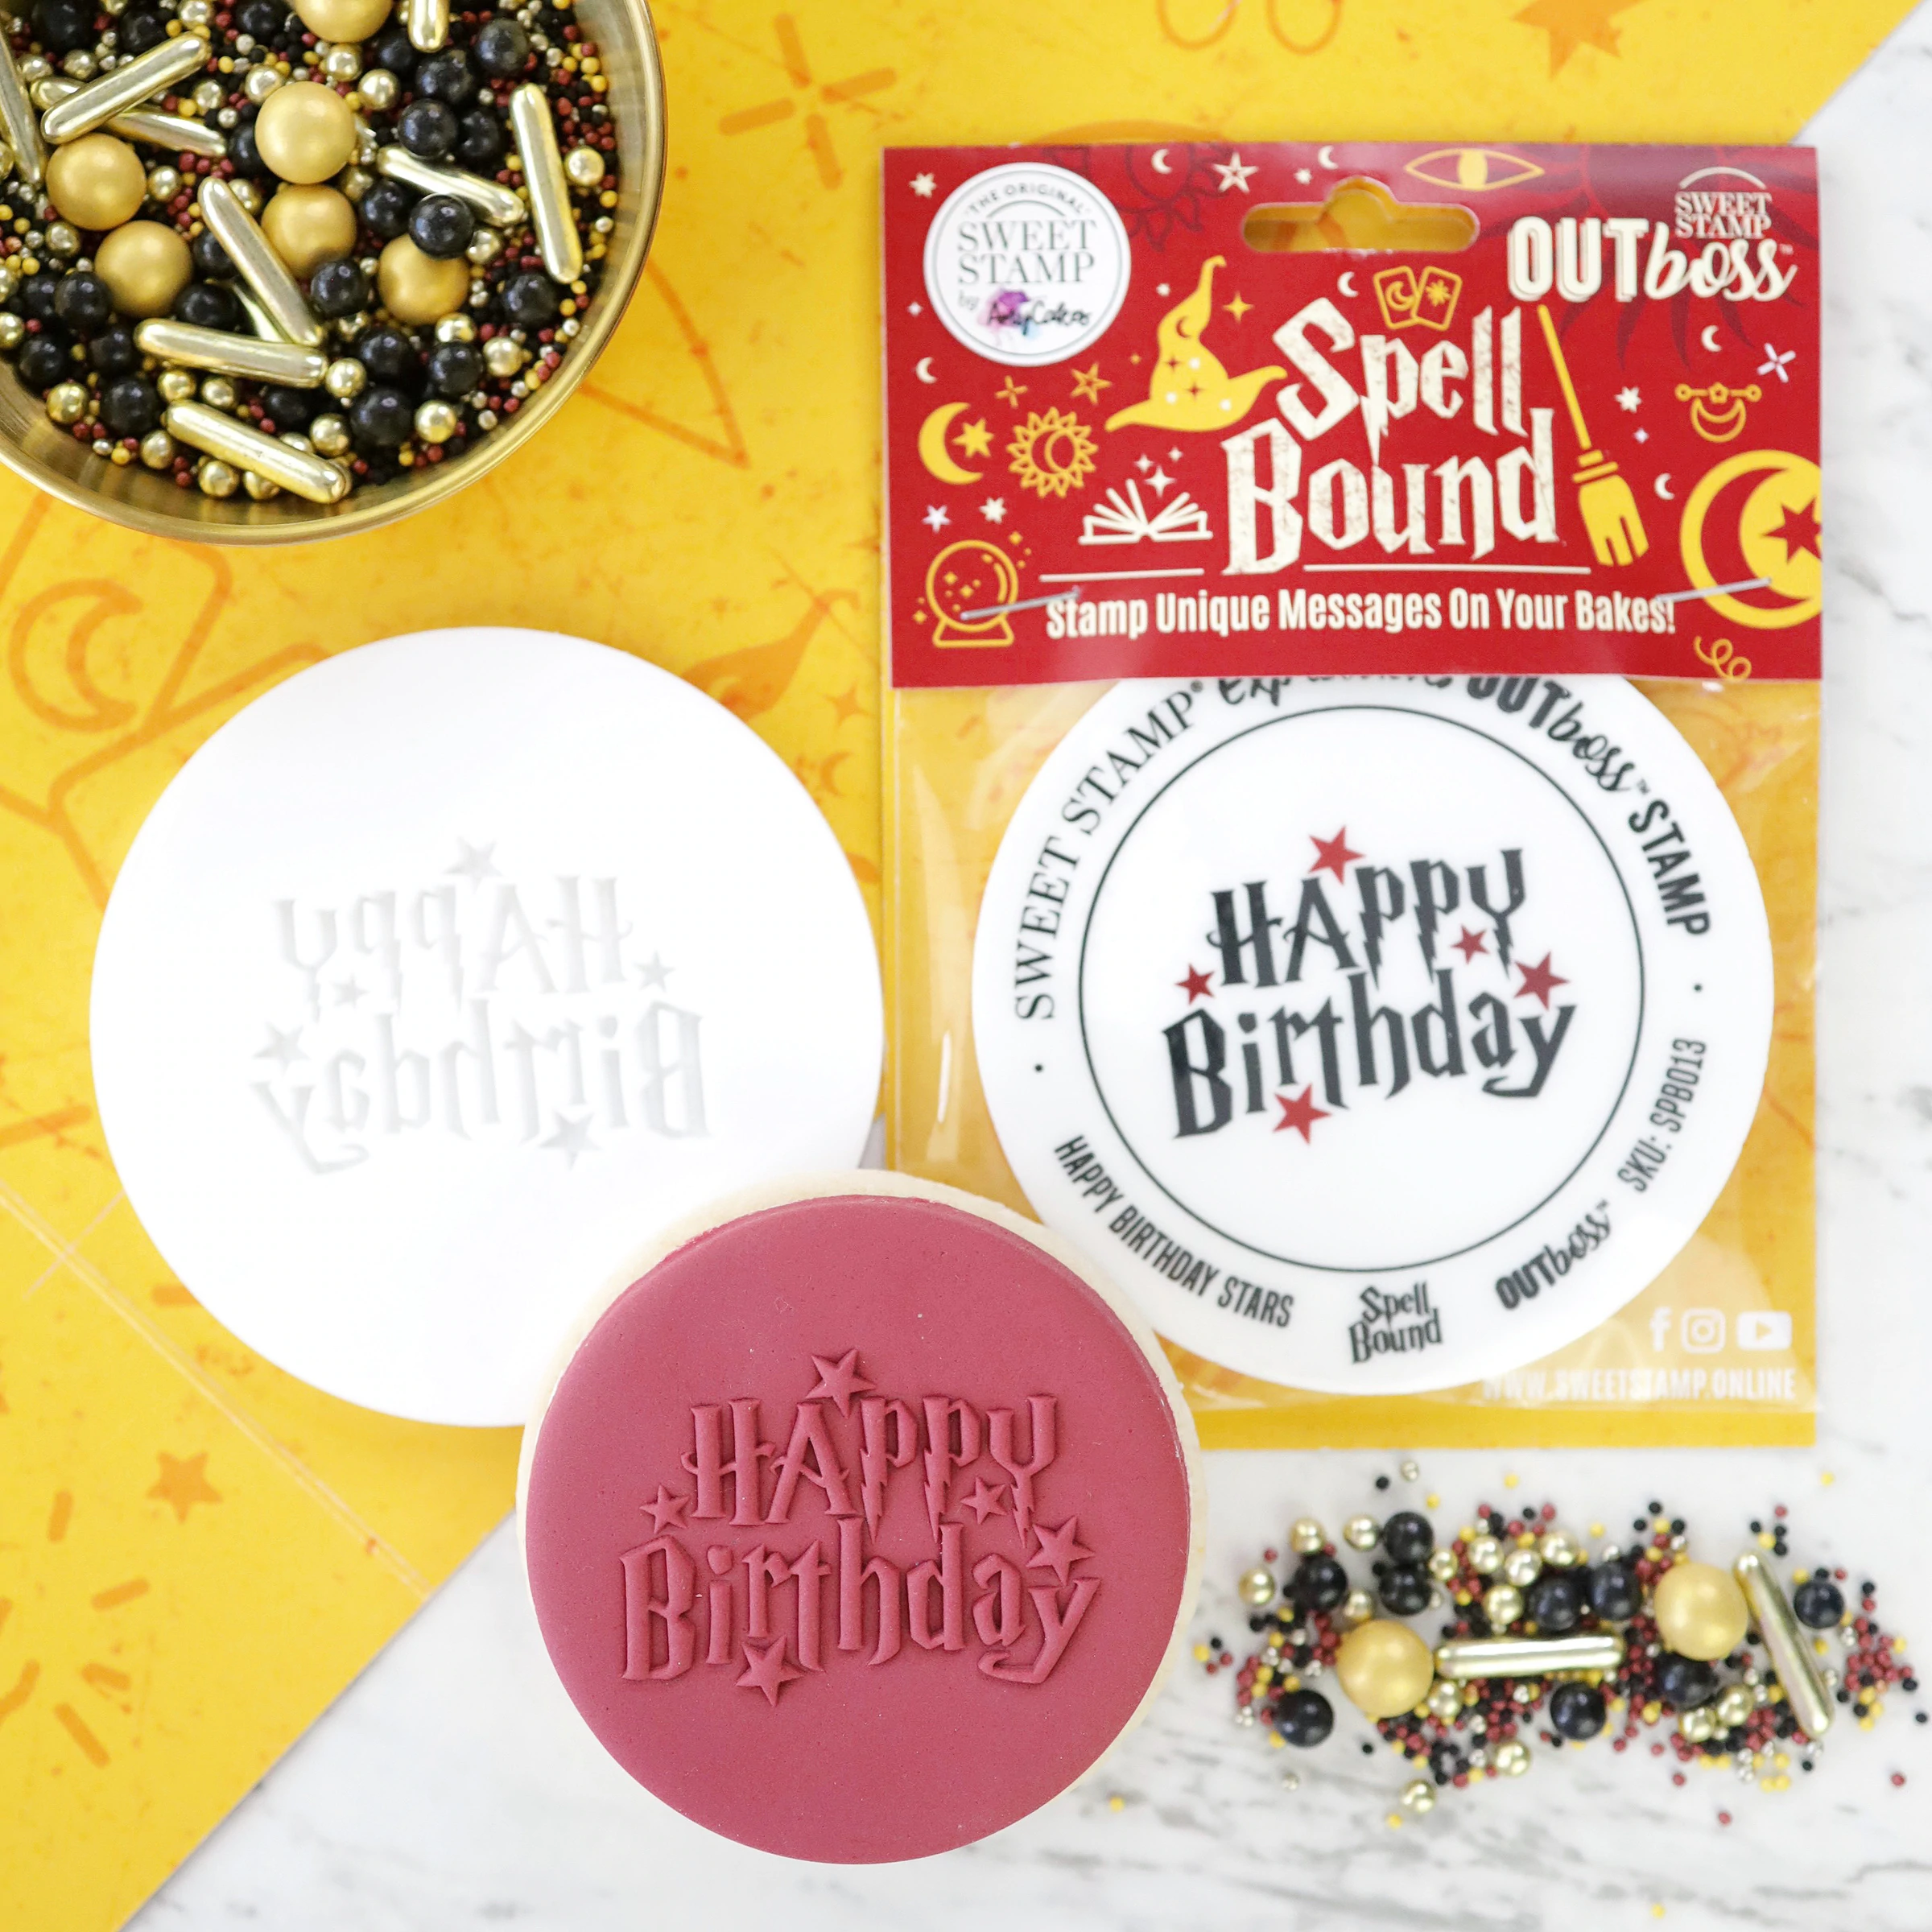 Bilde av Sweet Stamp Outboss Spell Bound -happy Birthday-